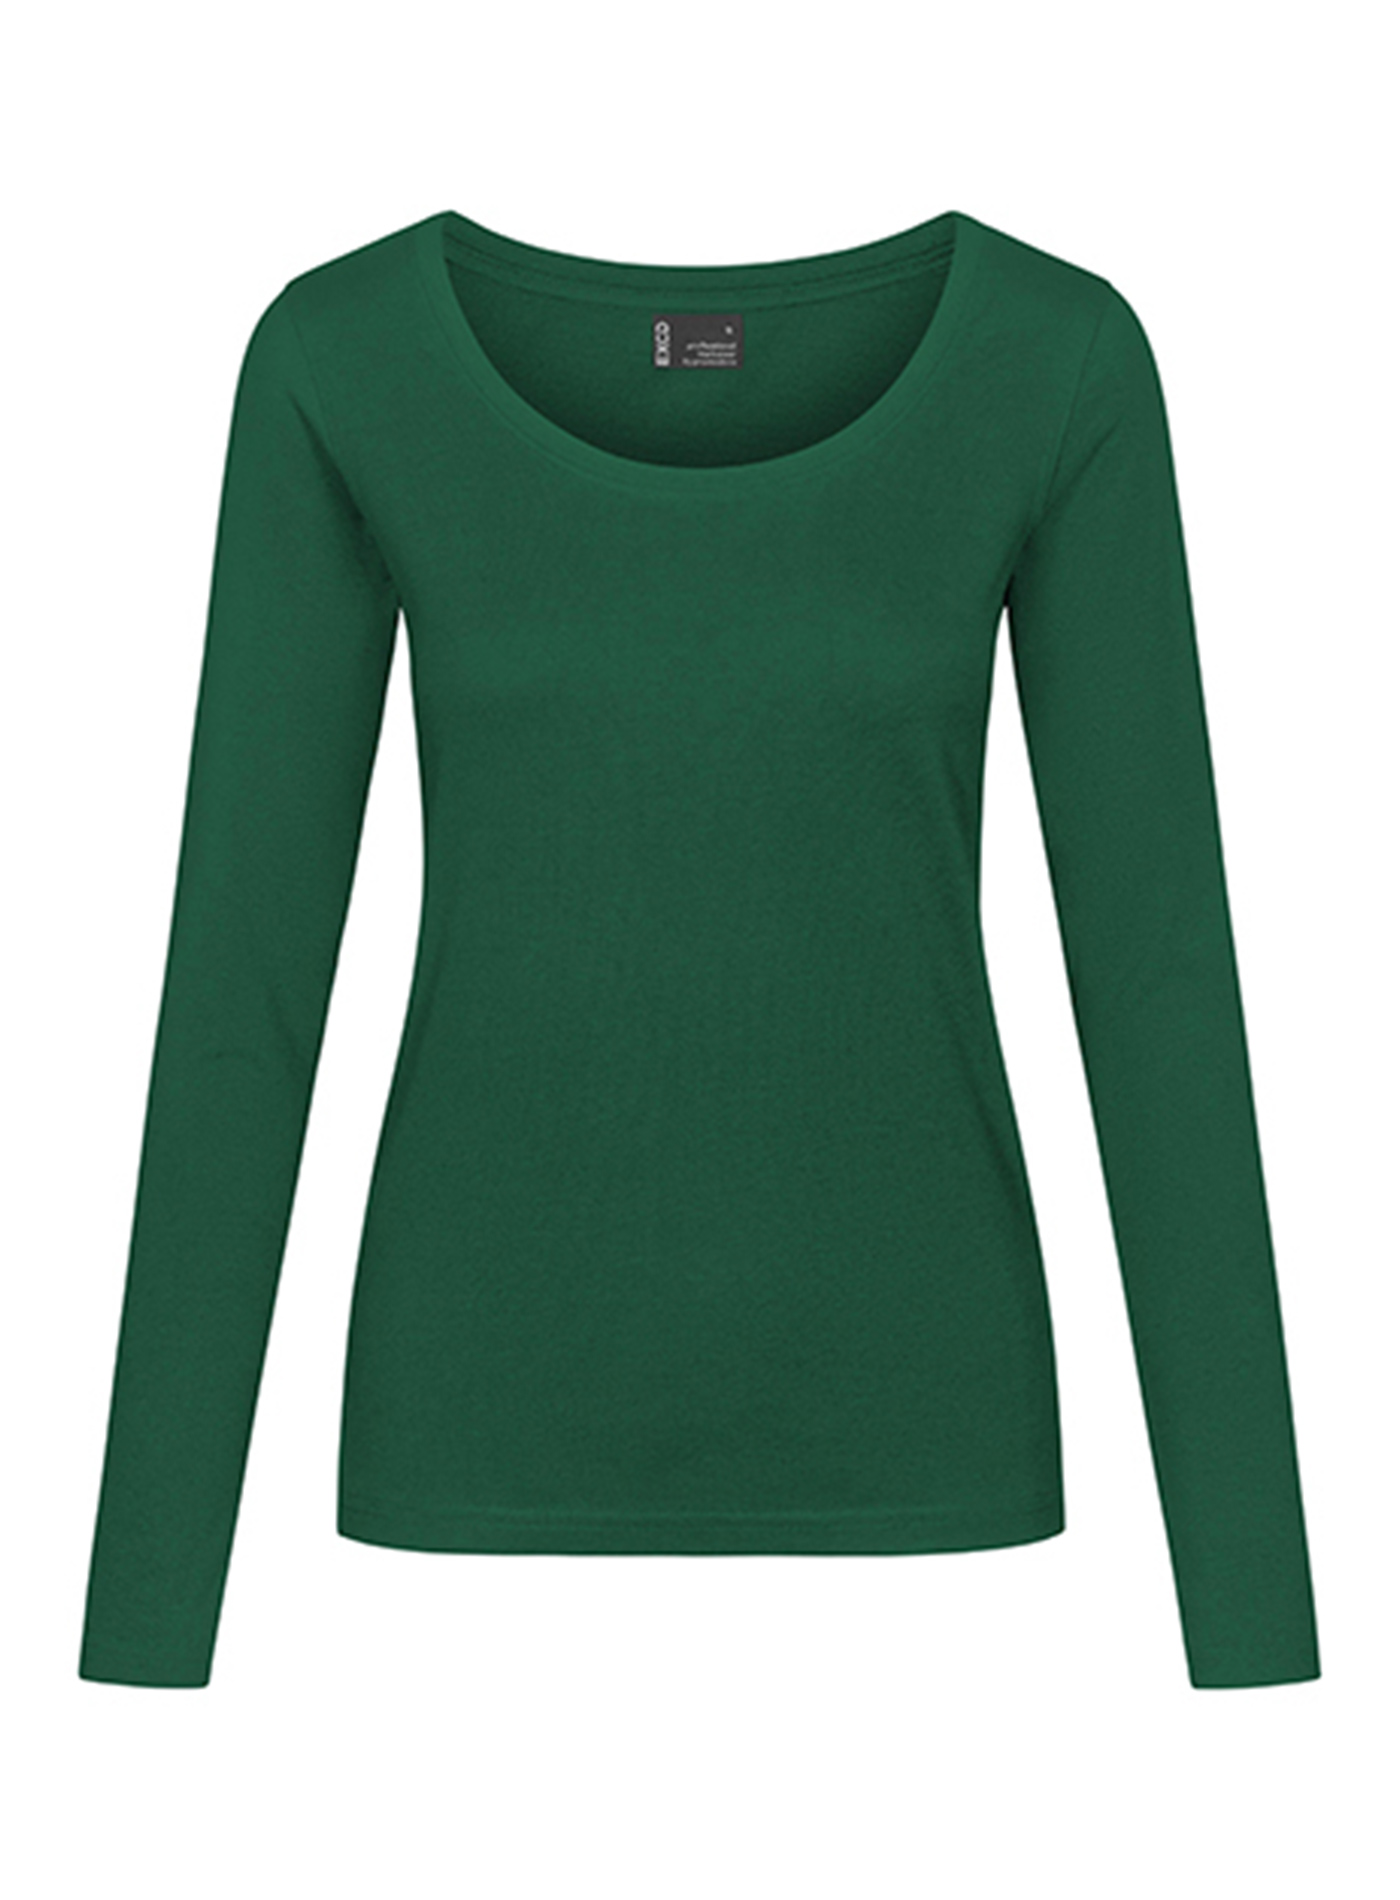 Dámské tričko s dlouhým rukávem Promodoro - Zelená M